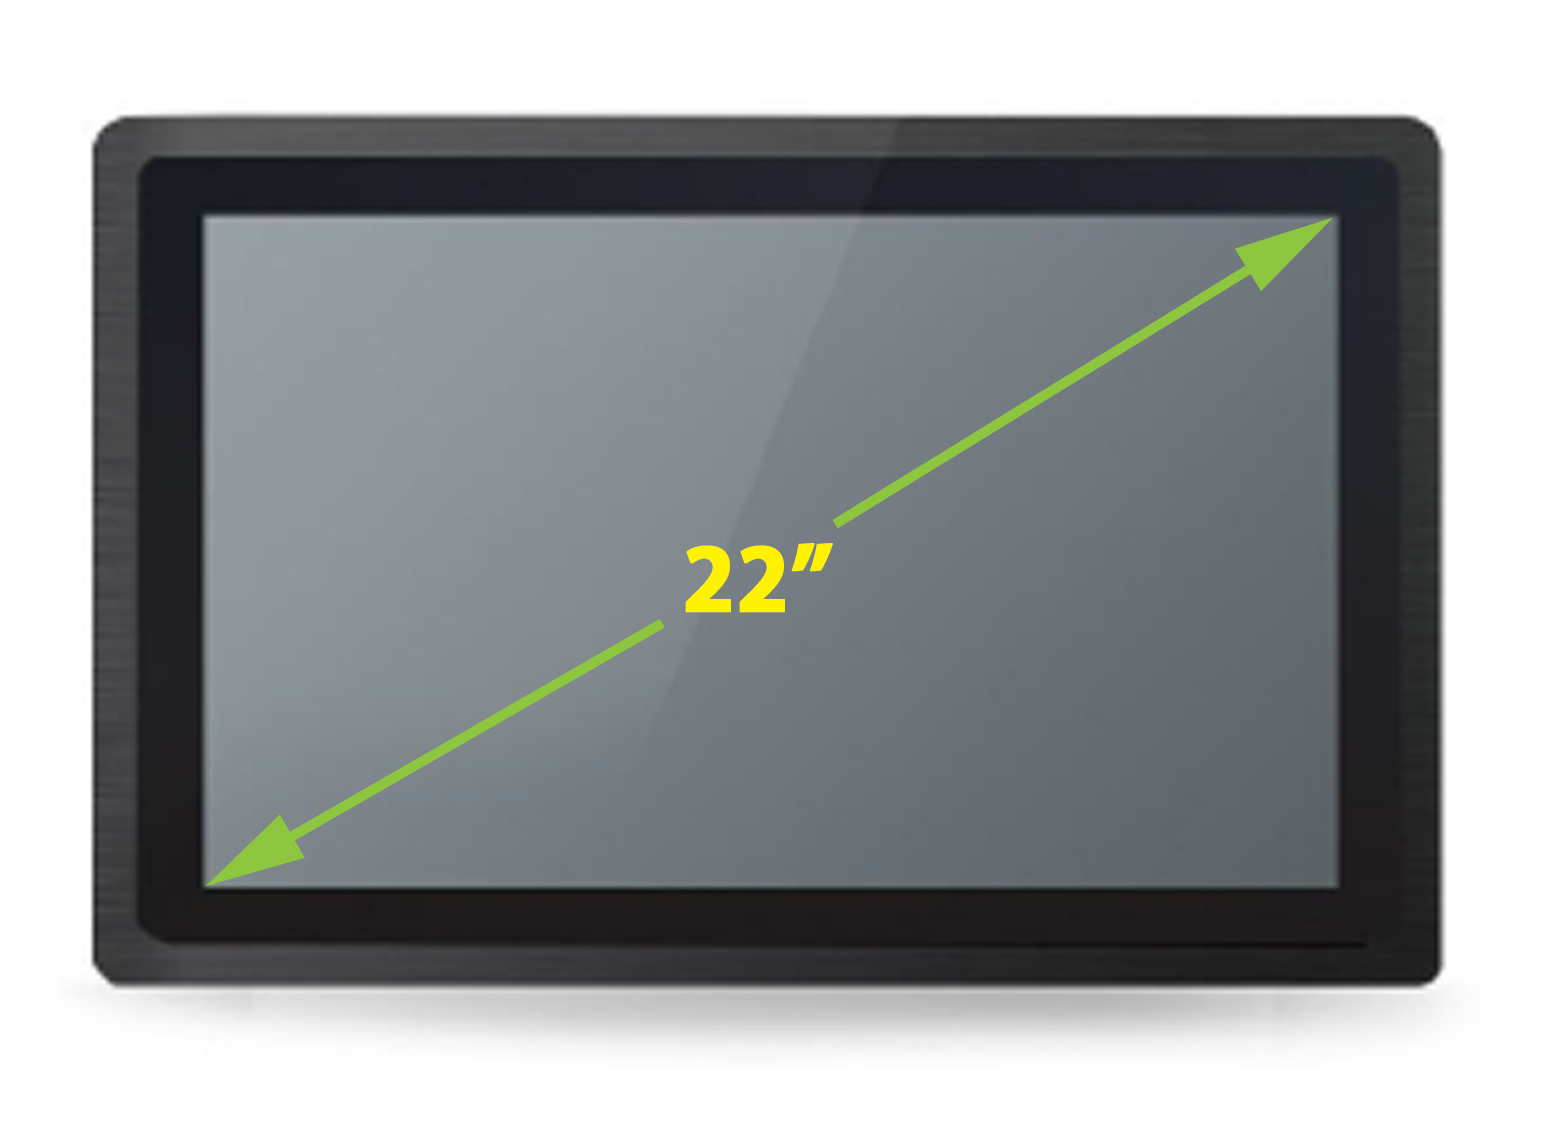  Monitor dotykowy PC  Monitor dotykowy Ekran pojemnociowy capacitive wywietlacz 22 cali LED mobilator.pl New Portable Devices VGA HDMI